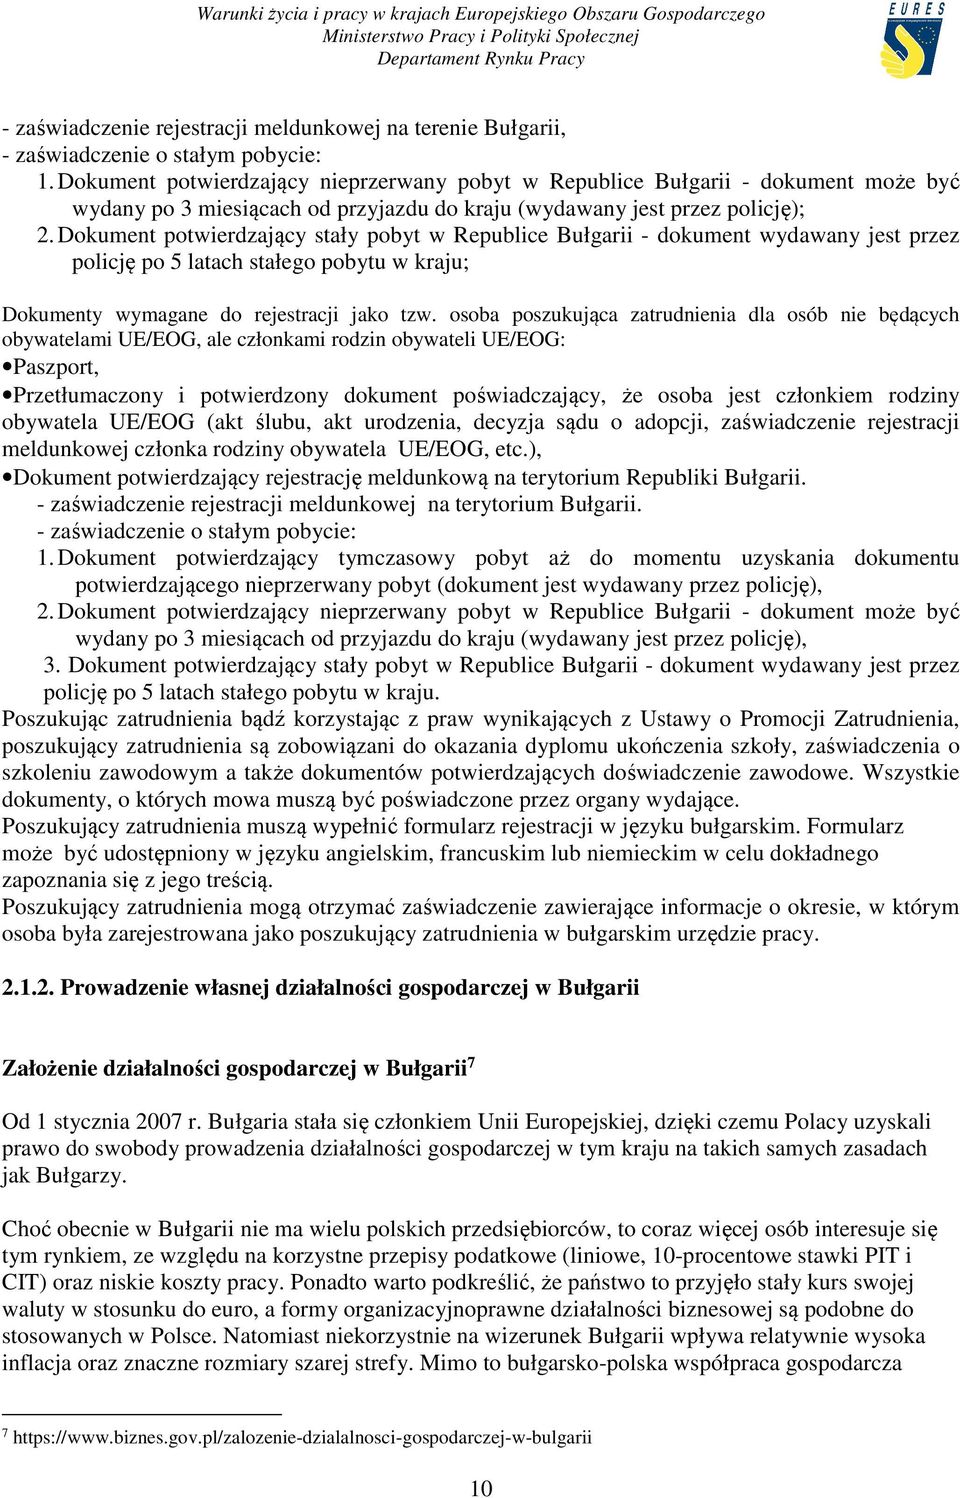 Dokument potwierdzający stały pobyt w Republice Bułgarii - dokument wydawany jest przez policję po 5 latach stałego pobytu w kraju; Dokumenty wymagane do rejestracji jako tzw.